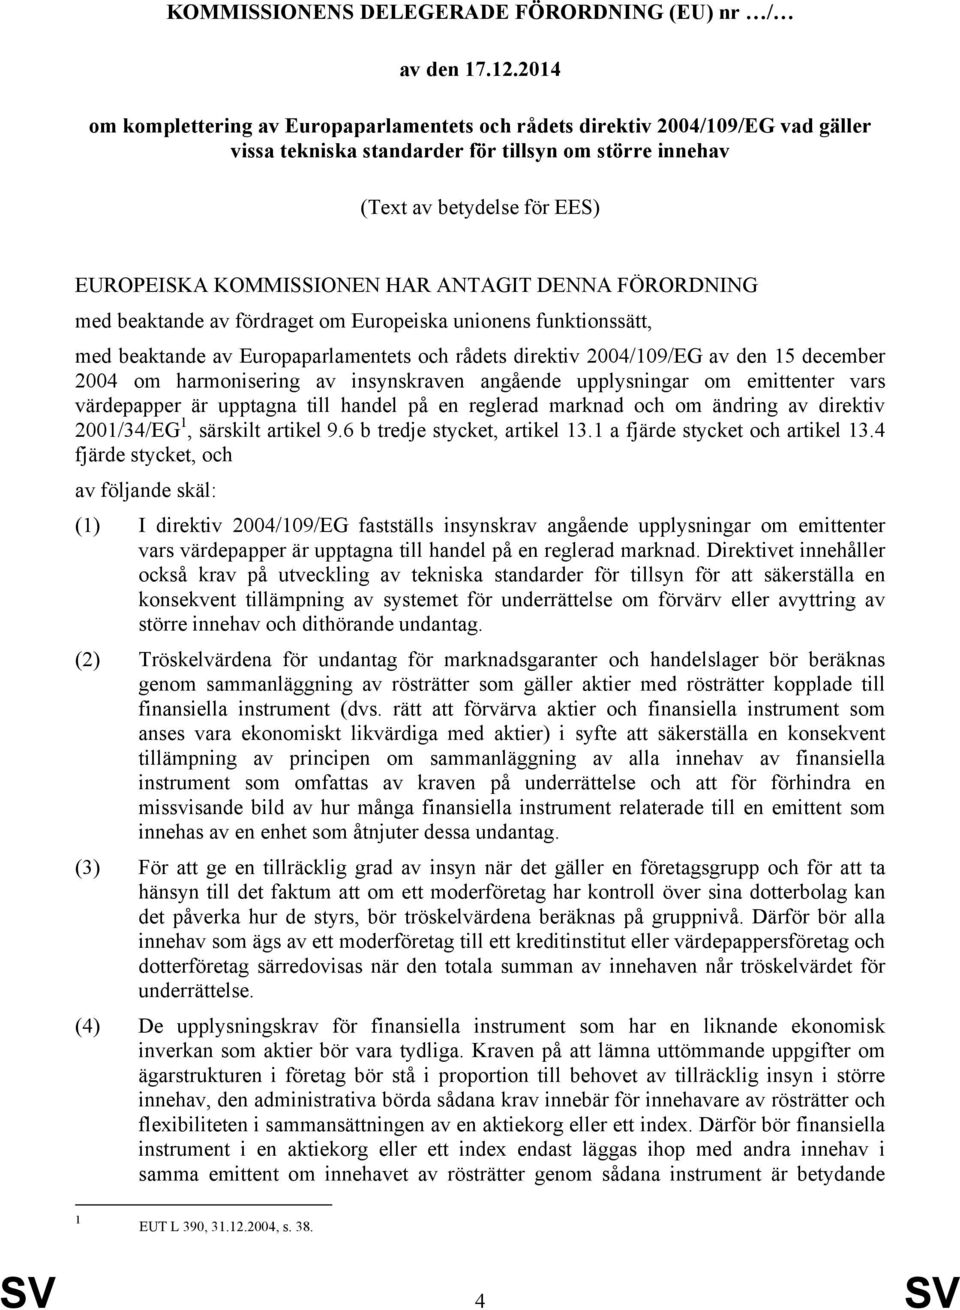 ANTAGIT DENNA FÖRORDNING med beaktande av fördraget om Europeiska unionens funktionssätt, med beaktande av Europaparlamentets och rådets direktiv 2004/109/EG av den 15 december 2004 om harmonisering